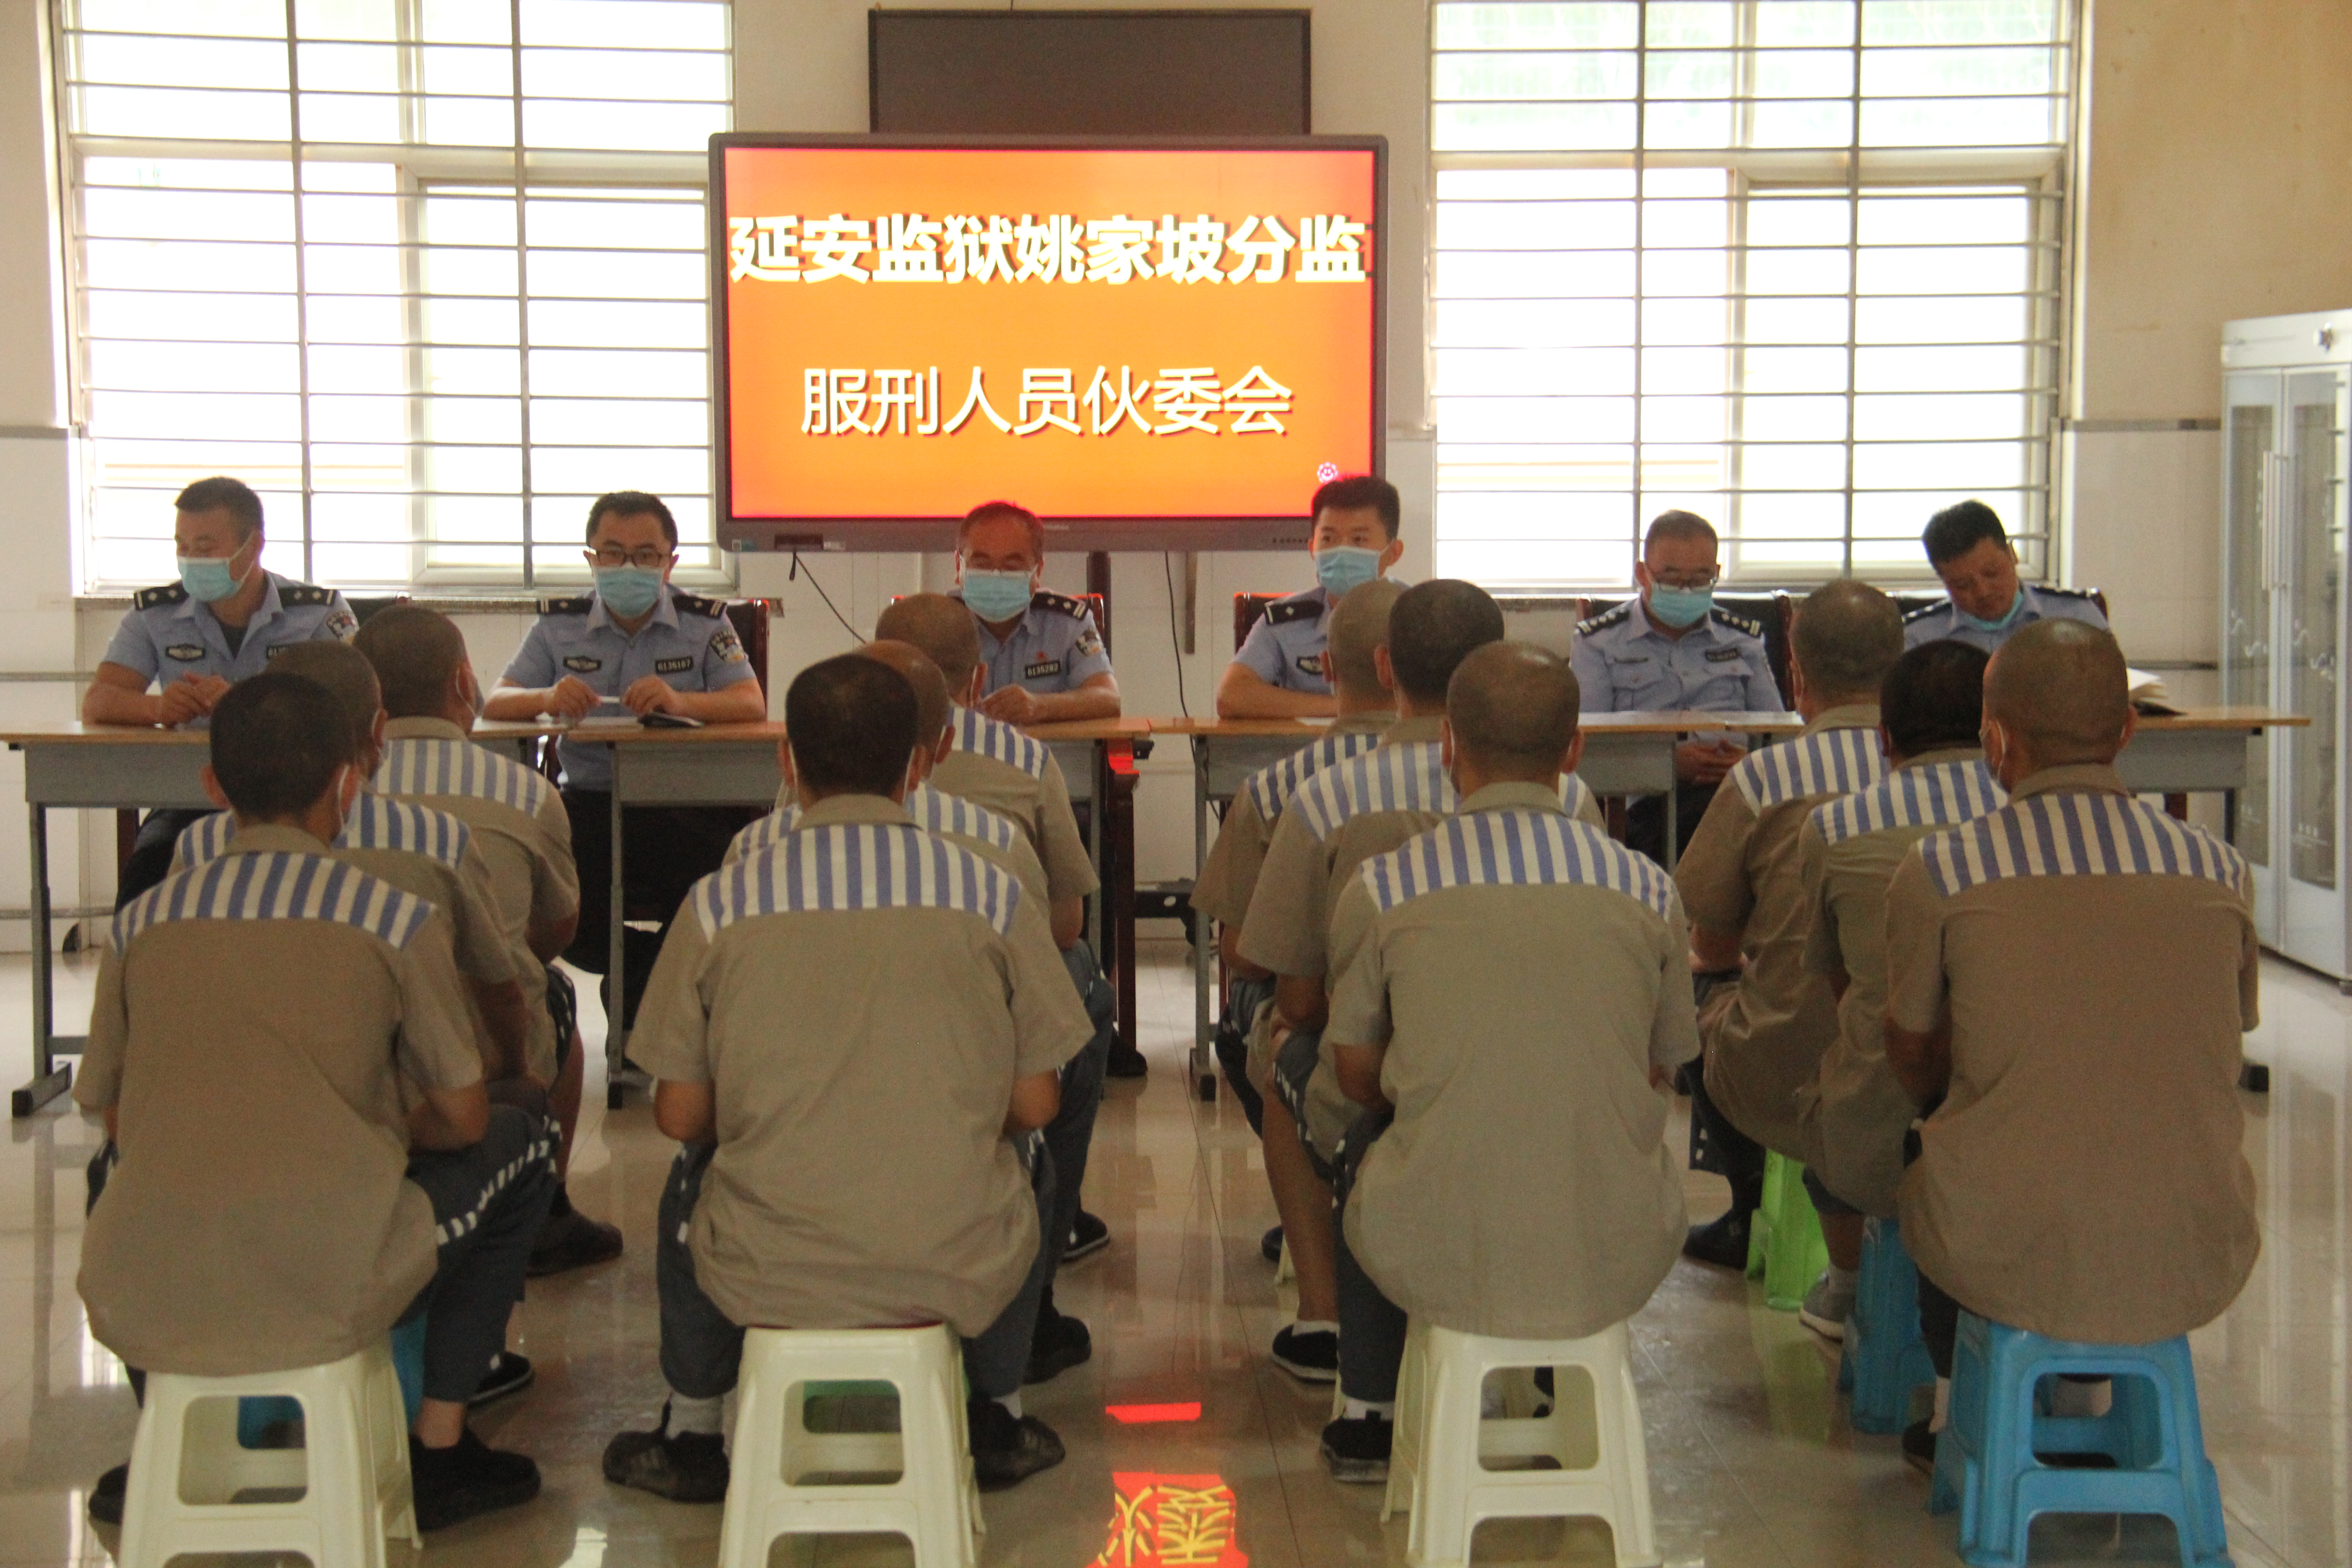 为进一步加强罪犯伙食规范化,精细化管理,8月19日,陕西省延安监狱